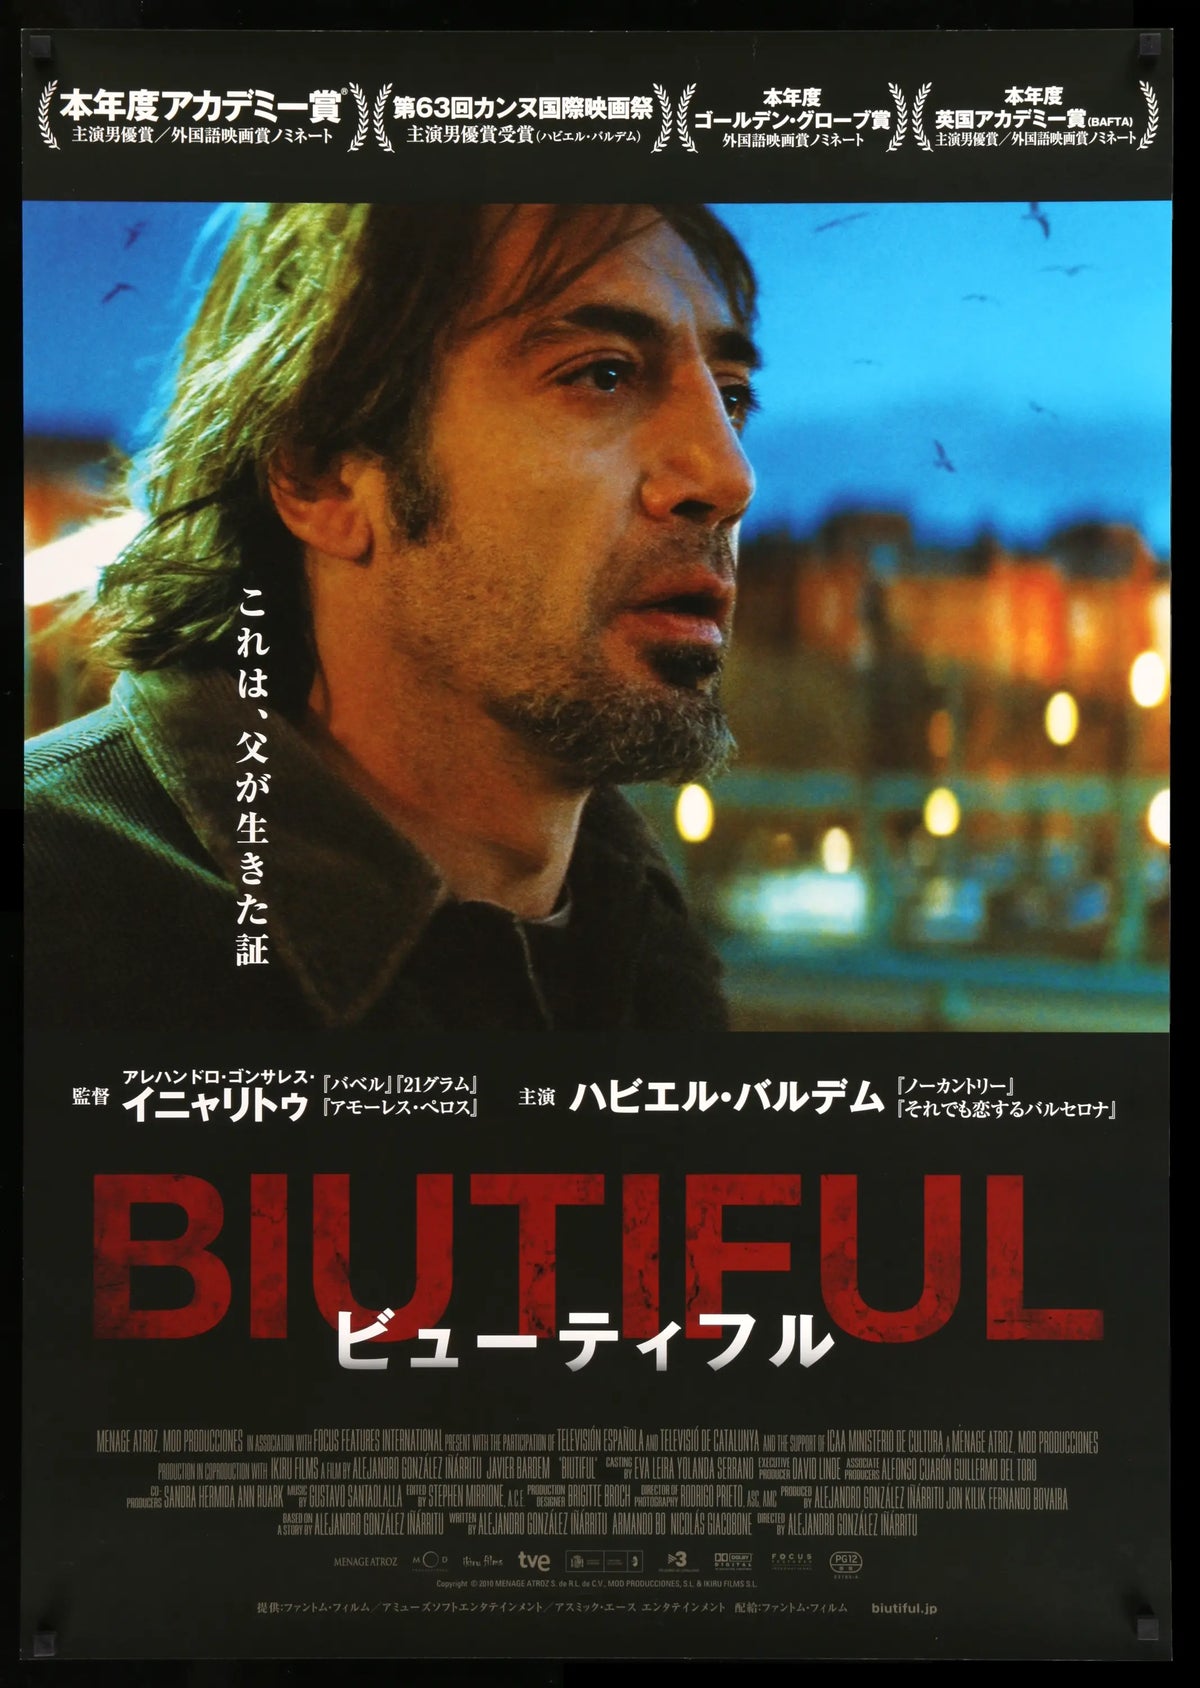 Biutiful (2010) original movie poster for sale at Original Film Art